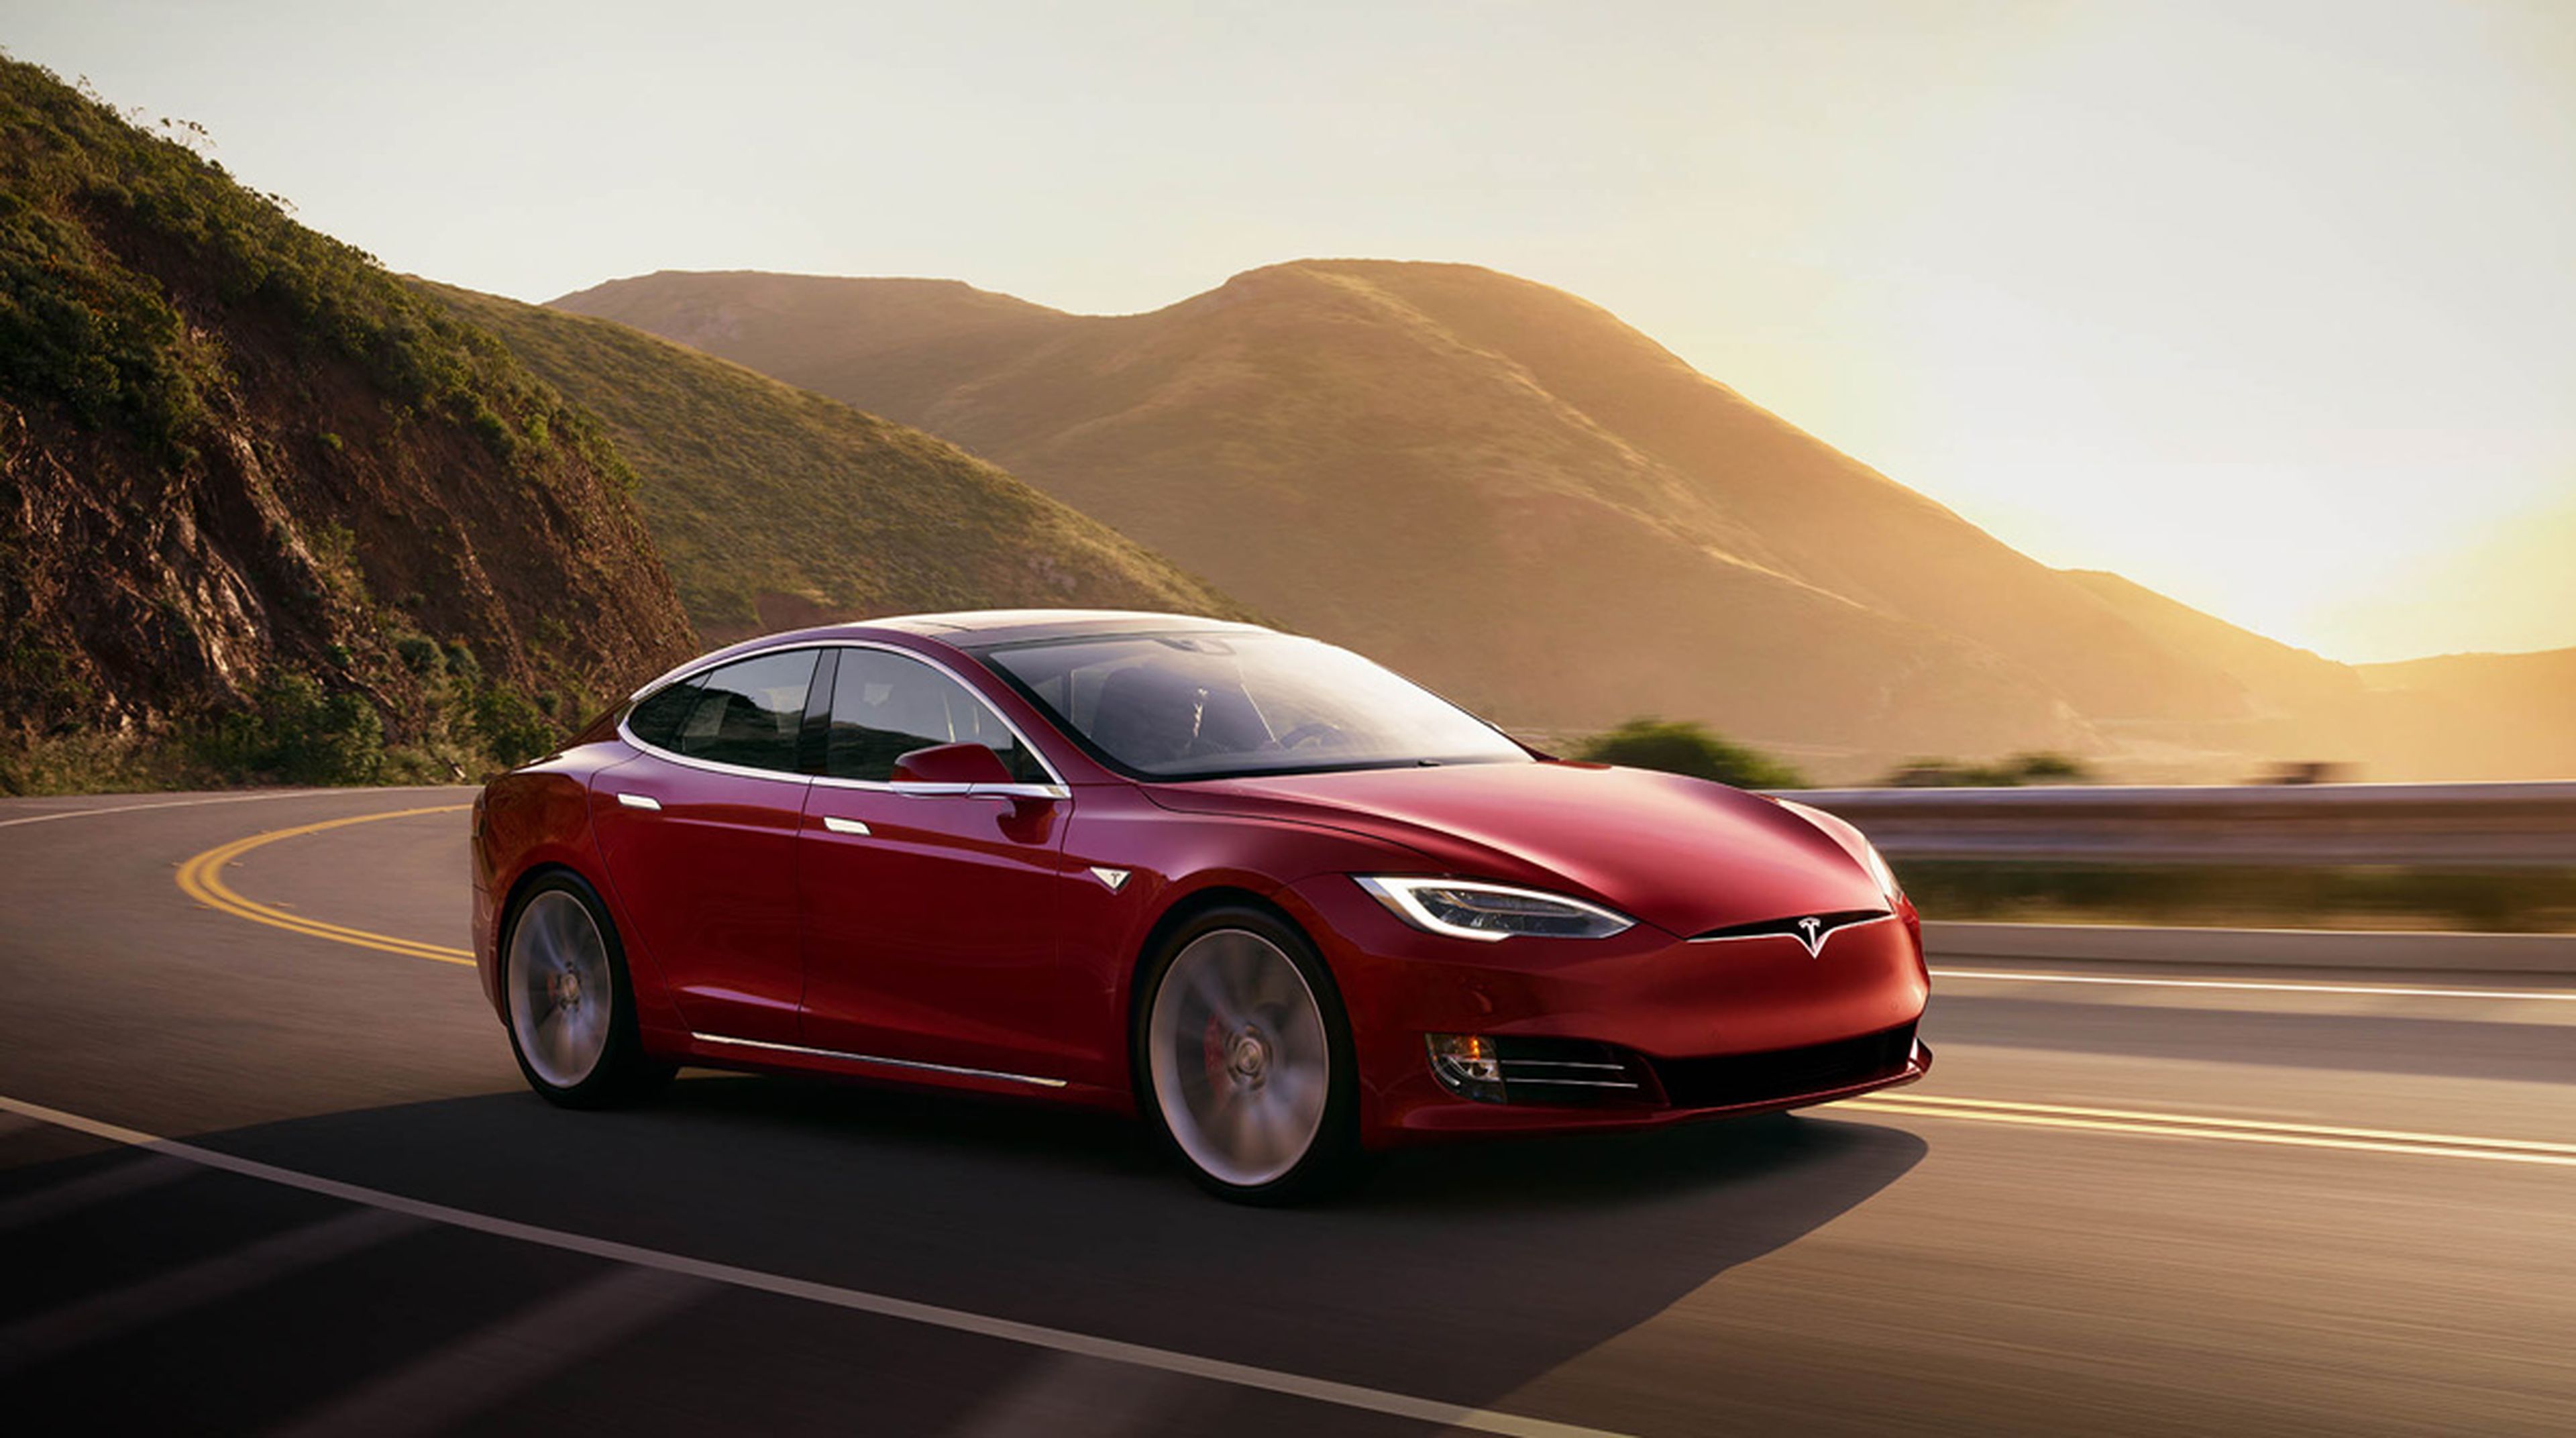 Opinión sobre coches eléctricos: ¿se han quedado viejos los diseños de Tesla?